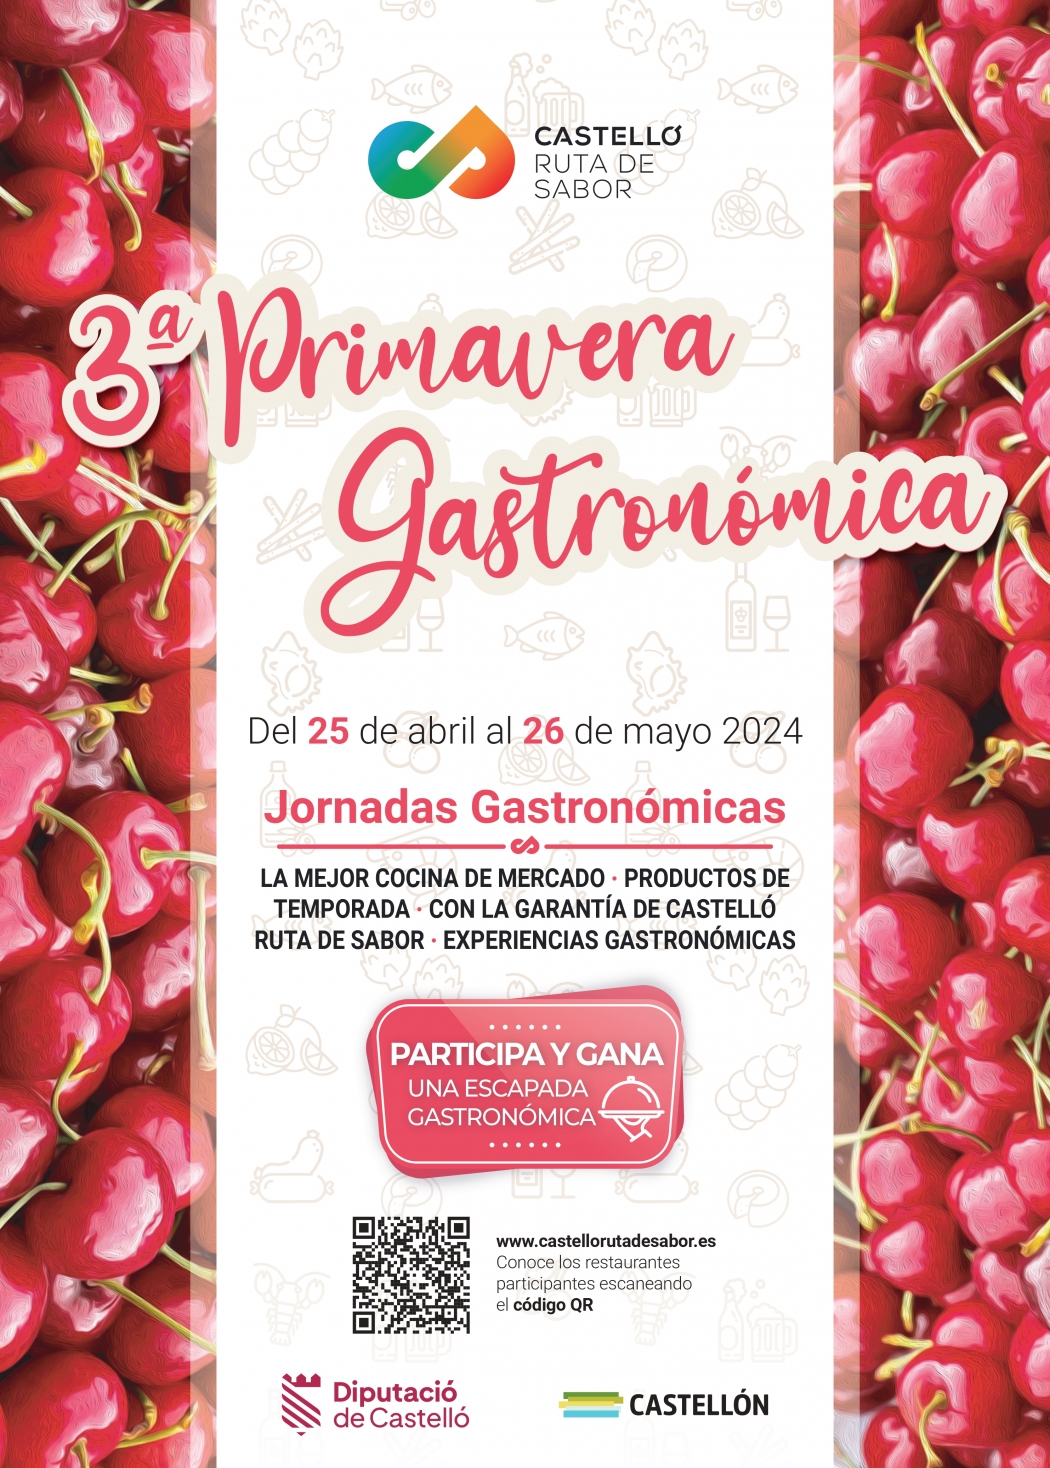 La 3a edició de la Primavera Gastronòmica Castelló Ruta de Sabor mostra la riquesa gastronòmica de la província